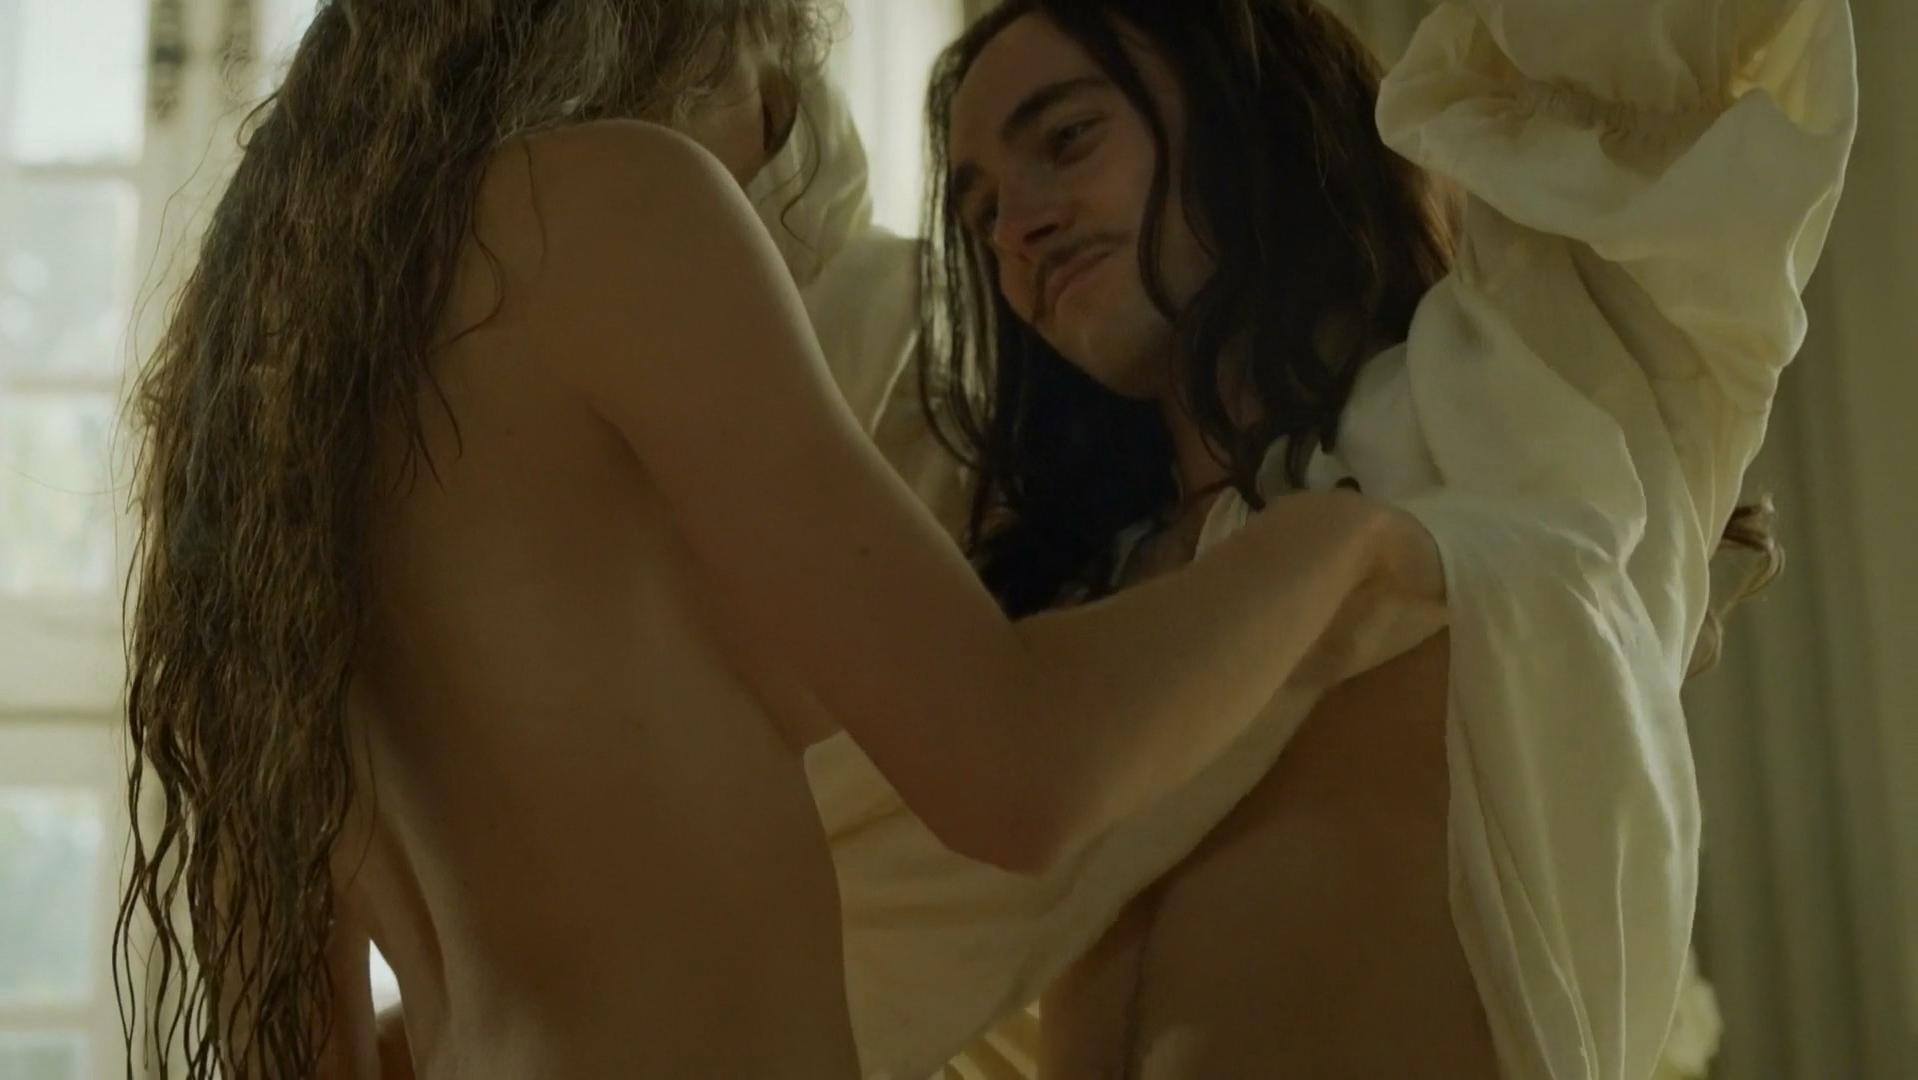 Nude Video Celebs Noemie Schmidt Nude Versailles S01e01 04 2015